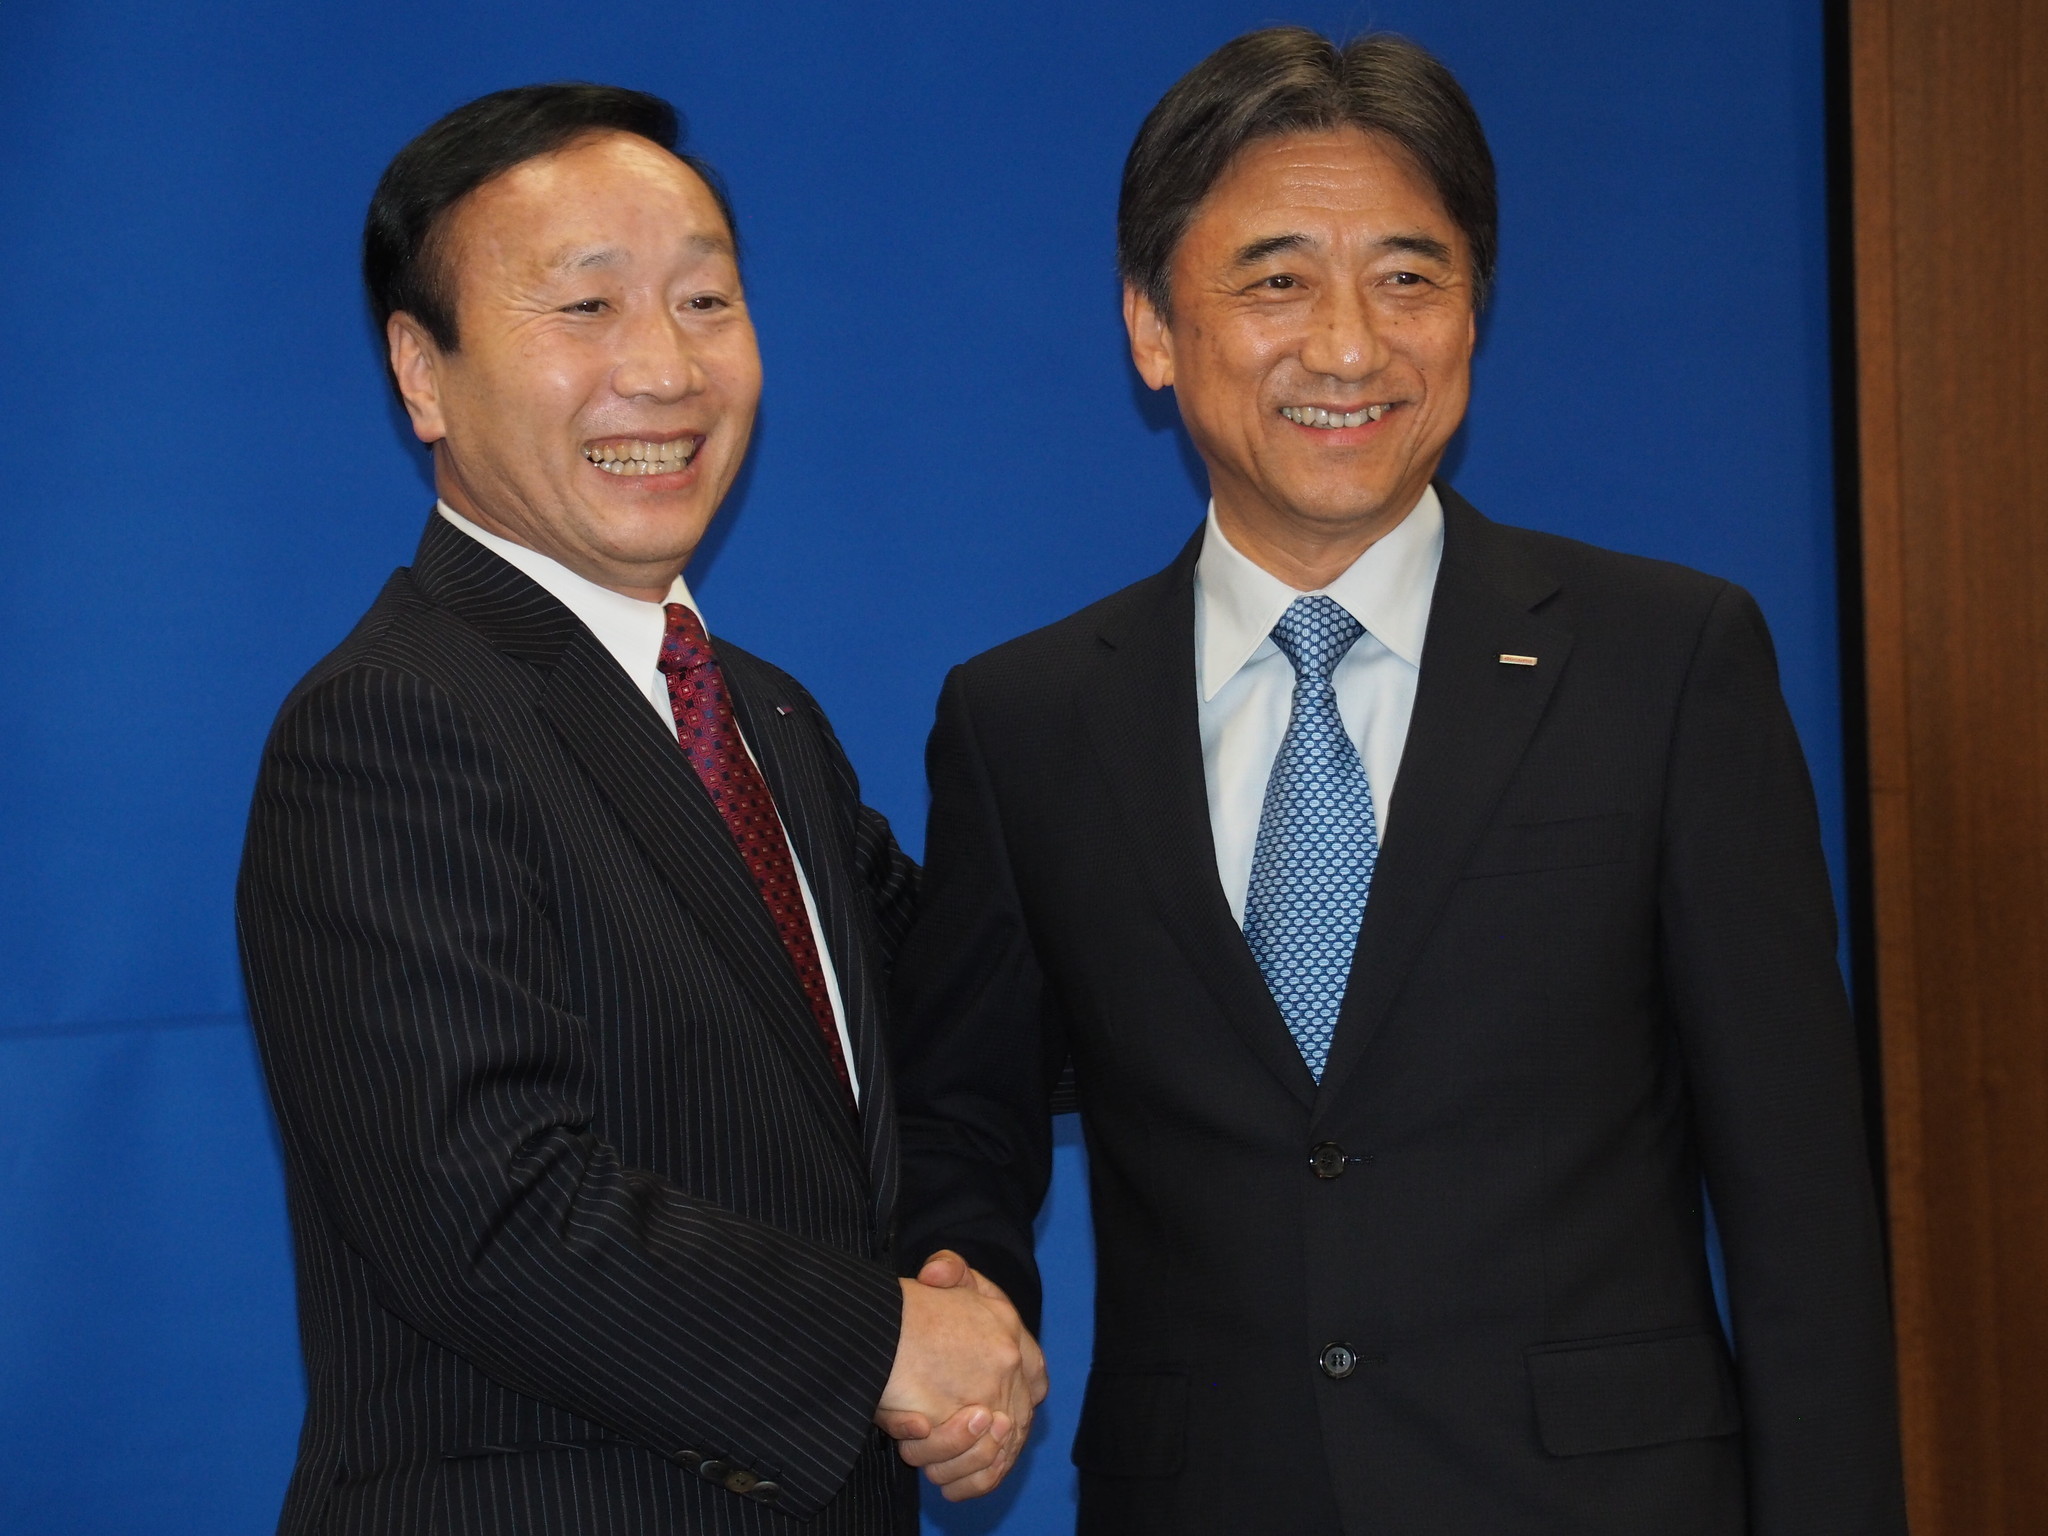 NTTドコモは4年毎に経営陣が交代しており、現在の吉澤氏(右)は2016年に前任の加藤薫氏(左)から交代する形で社長に就任している
